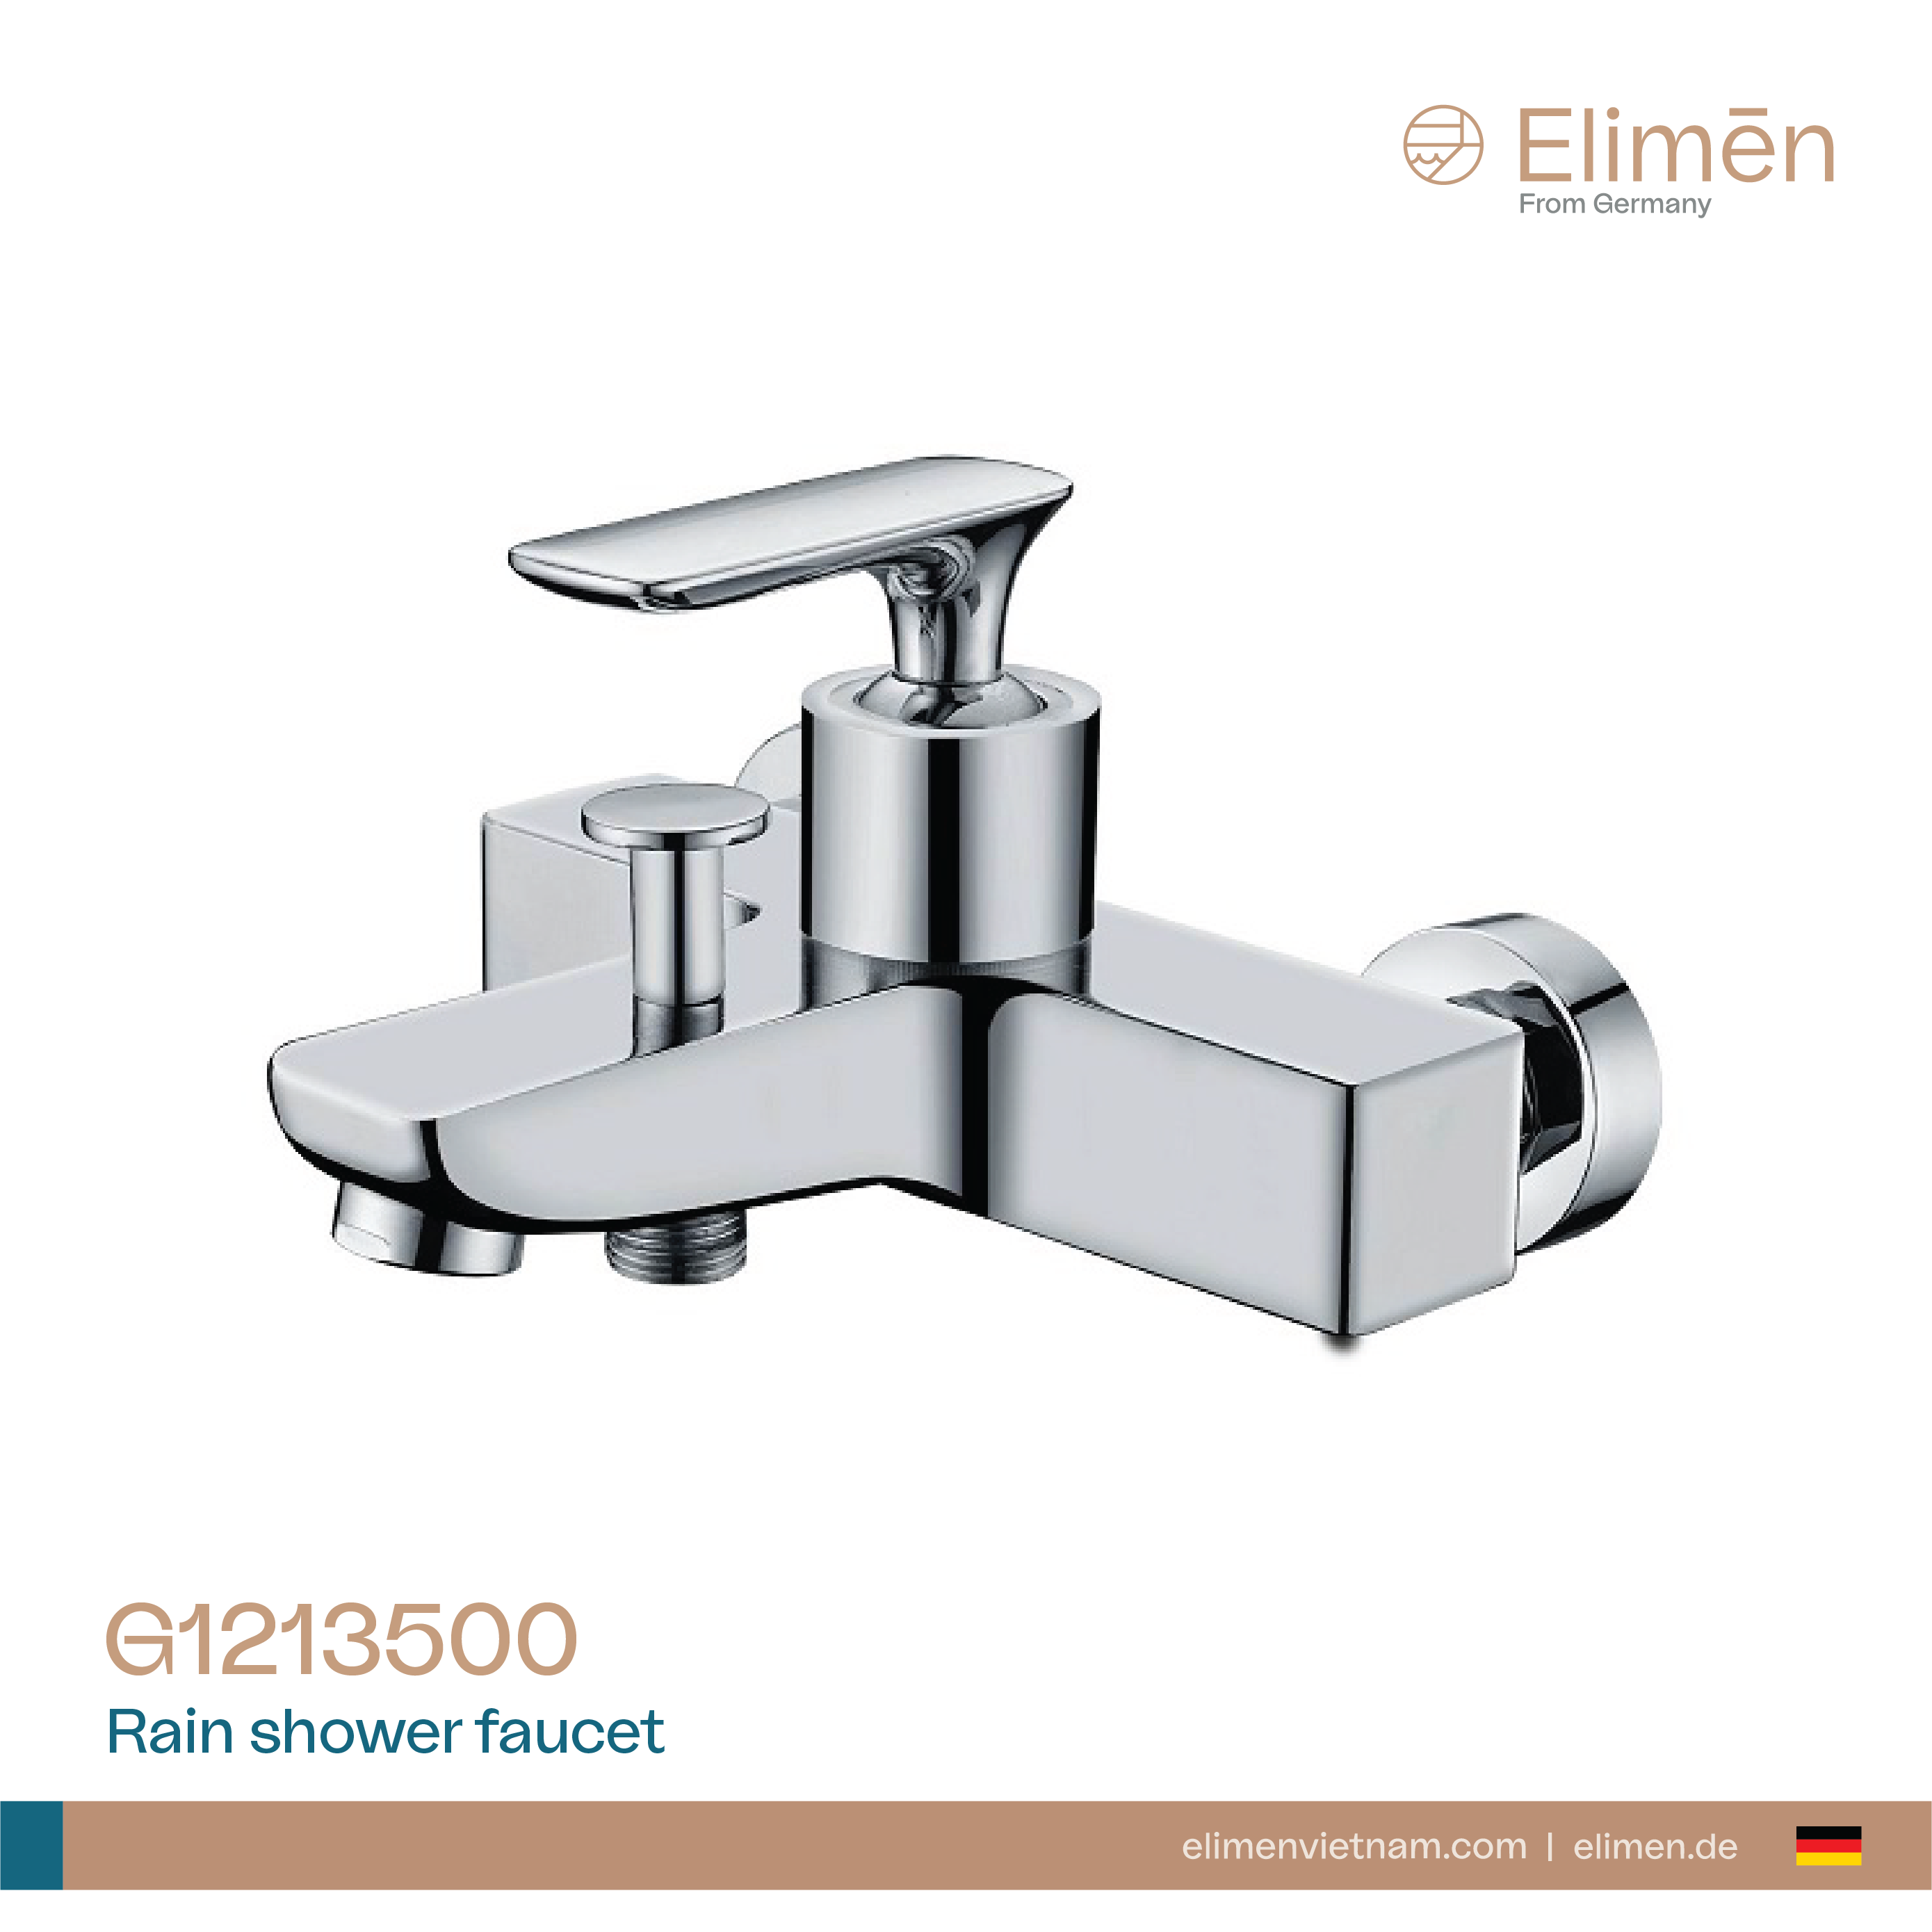 Elimen shower tubers - Code G1213500